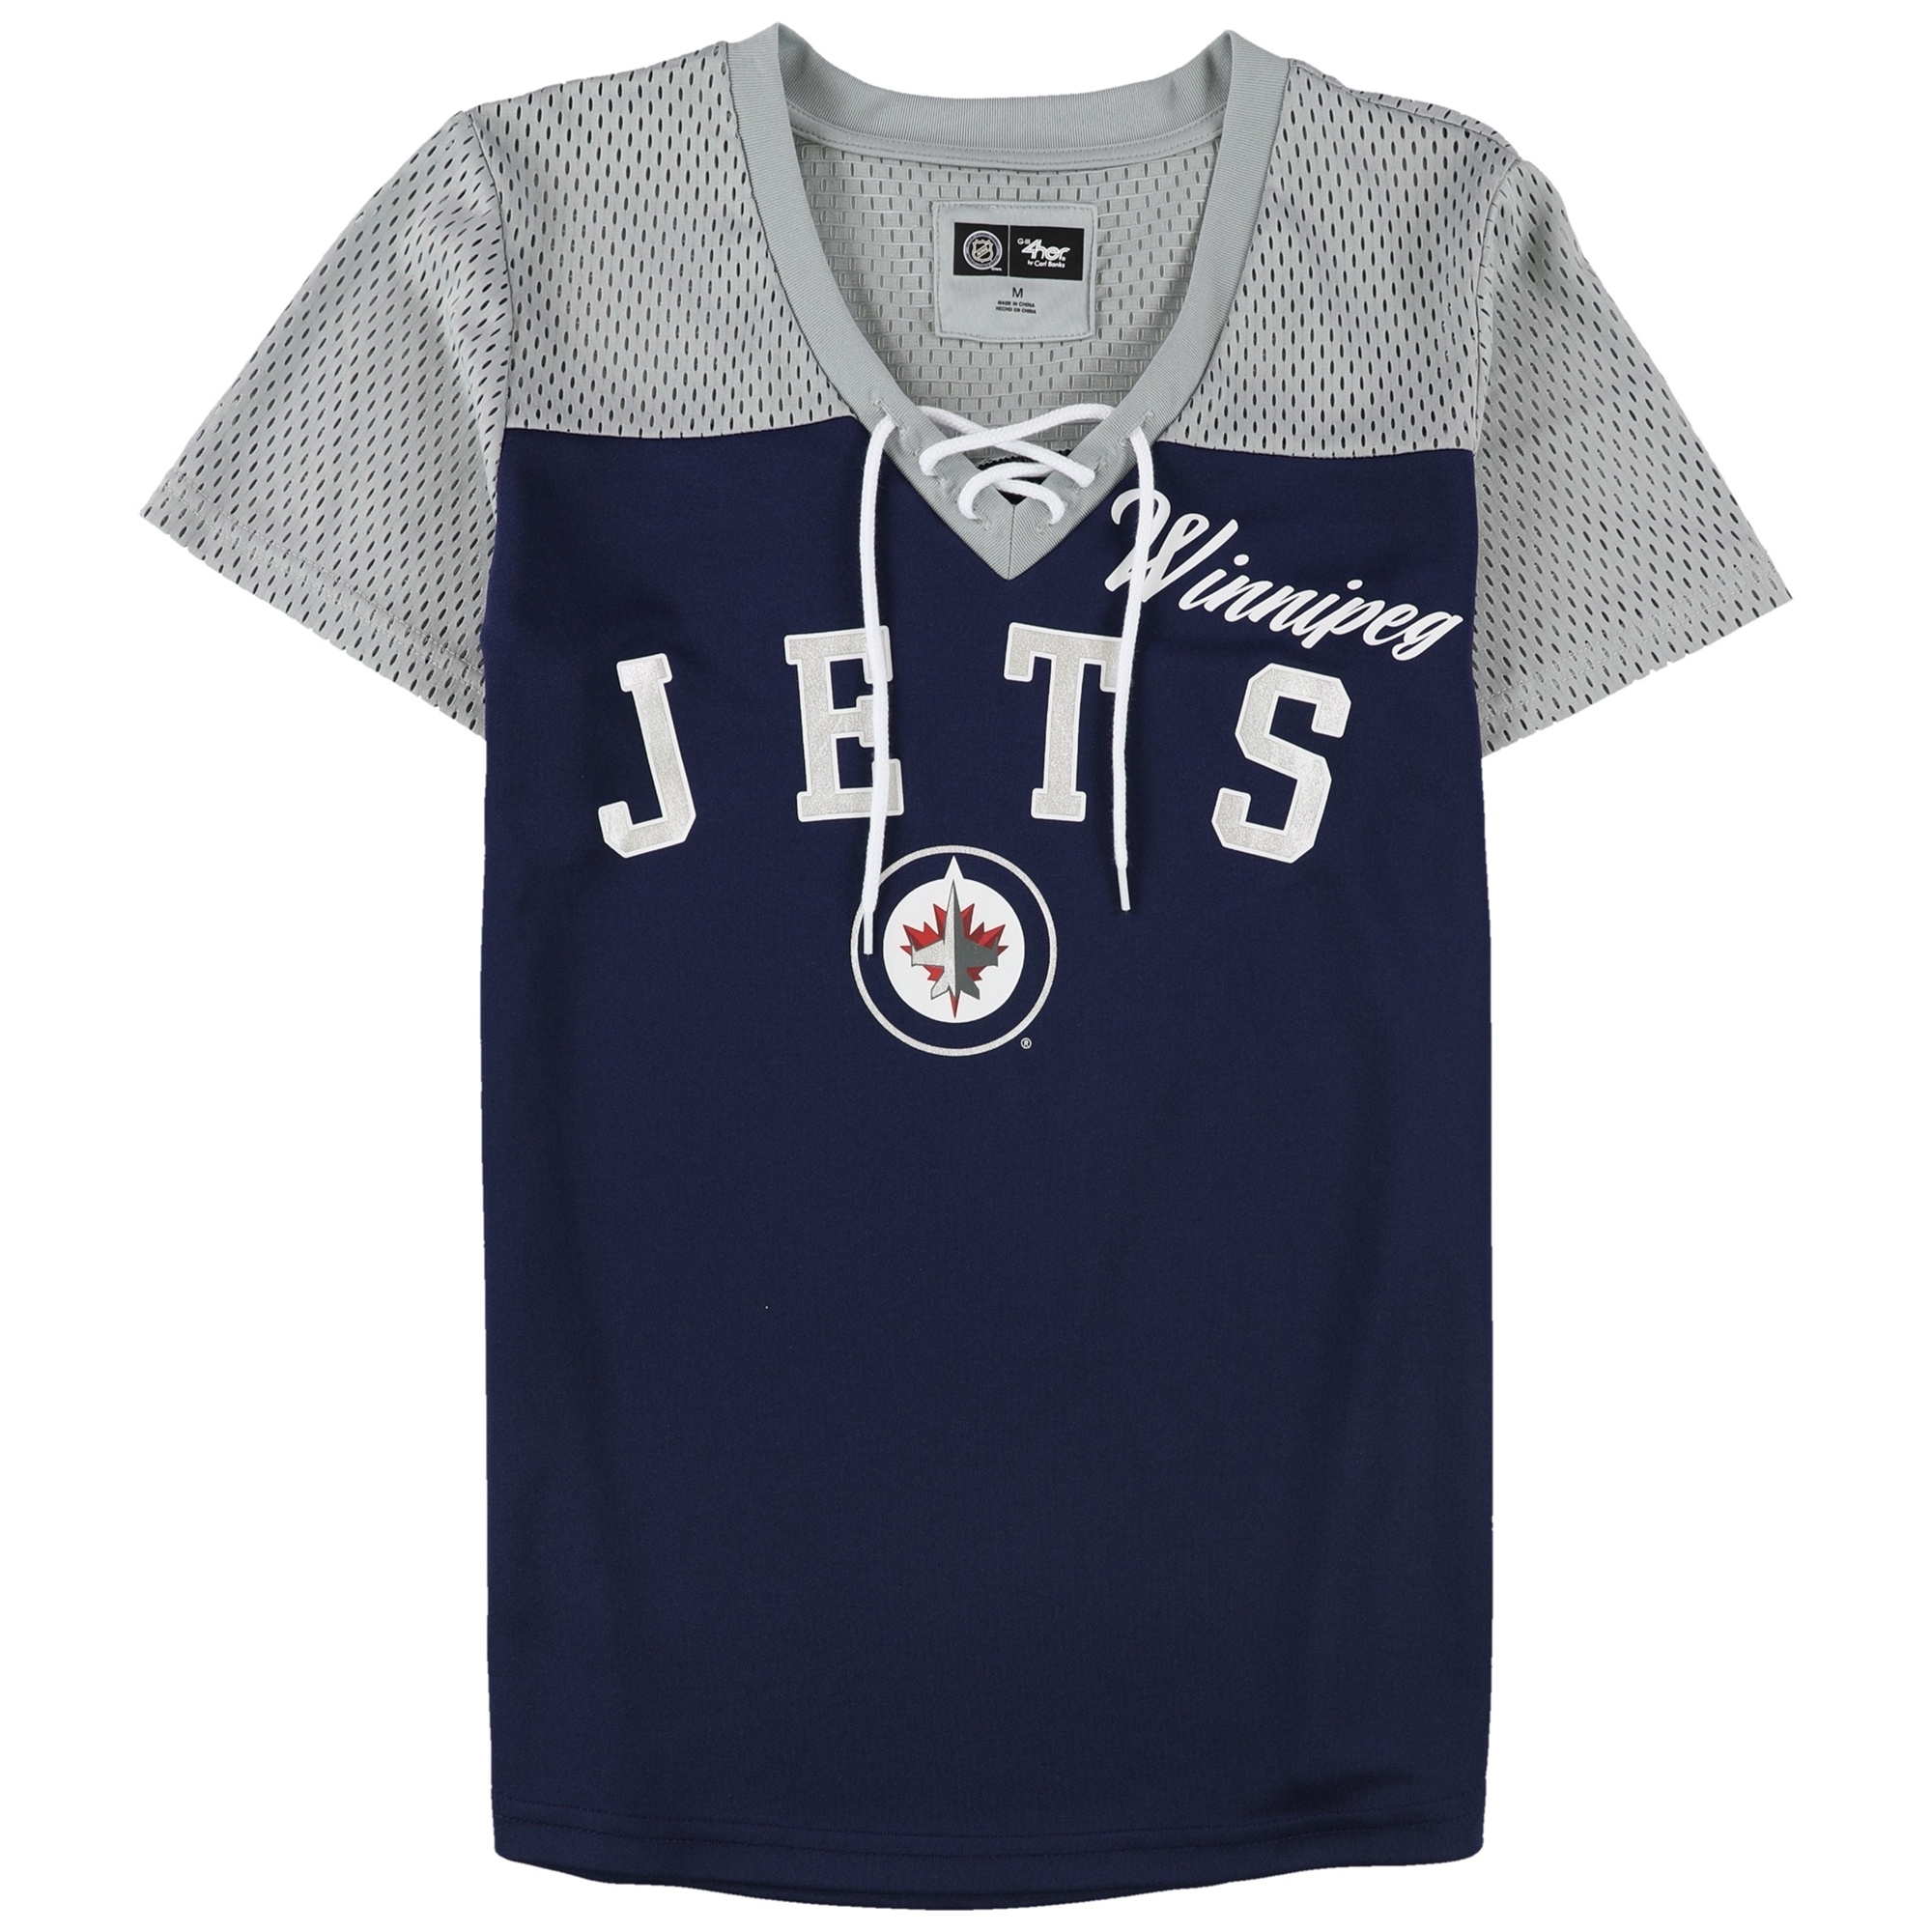 G Iii 4Her By Carl Banks White Boston Bruins Hockey Girls Shirt